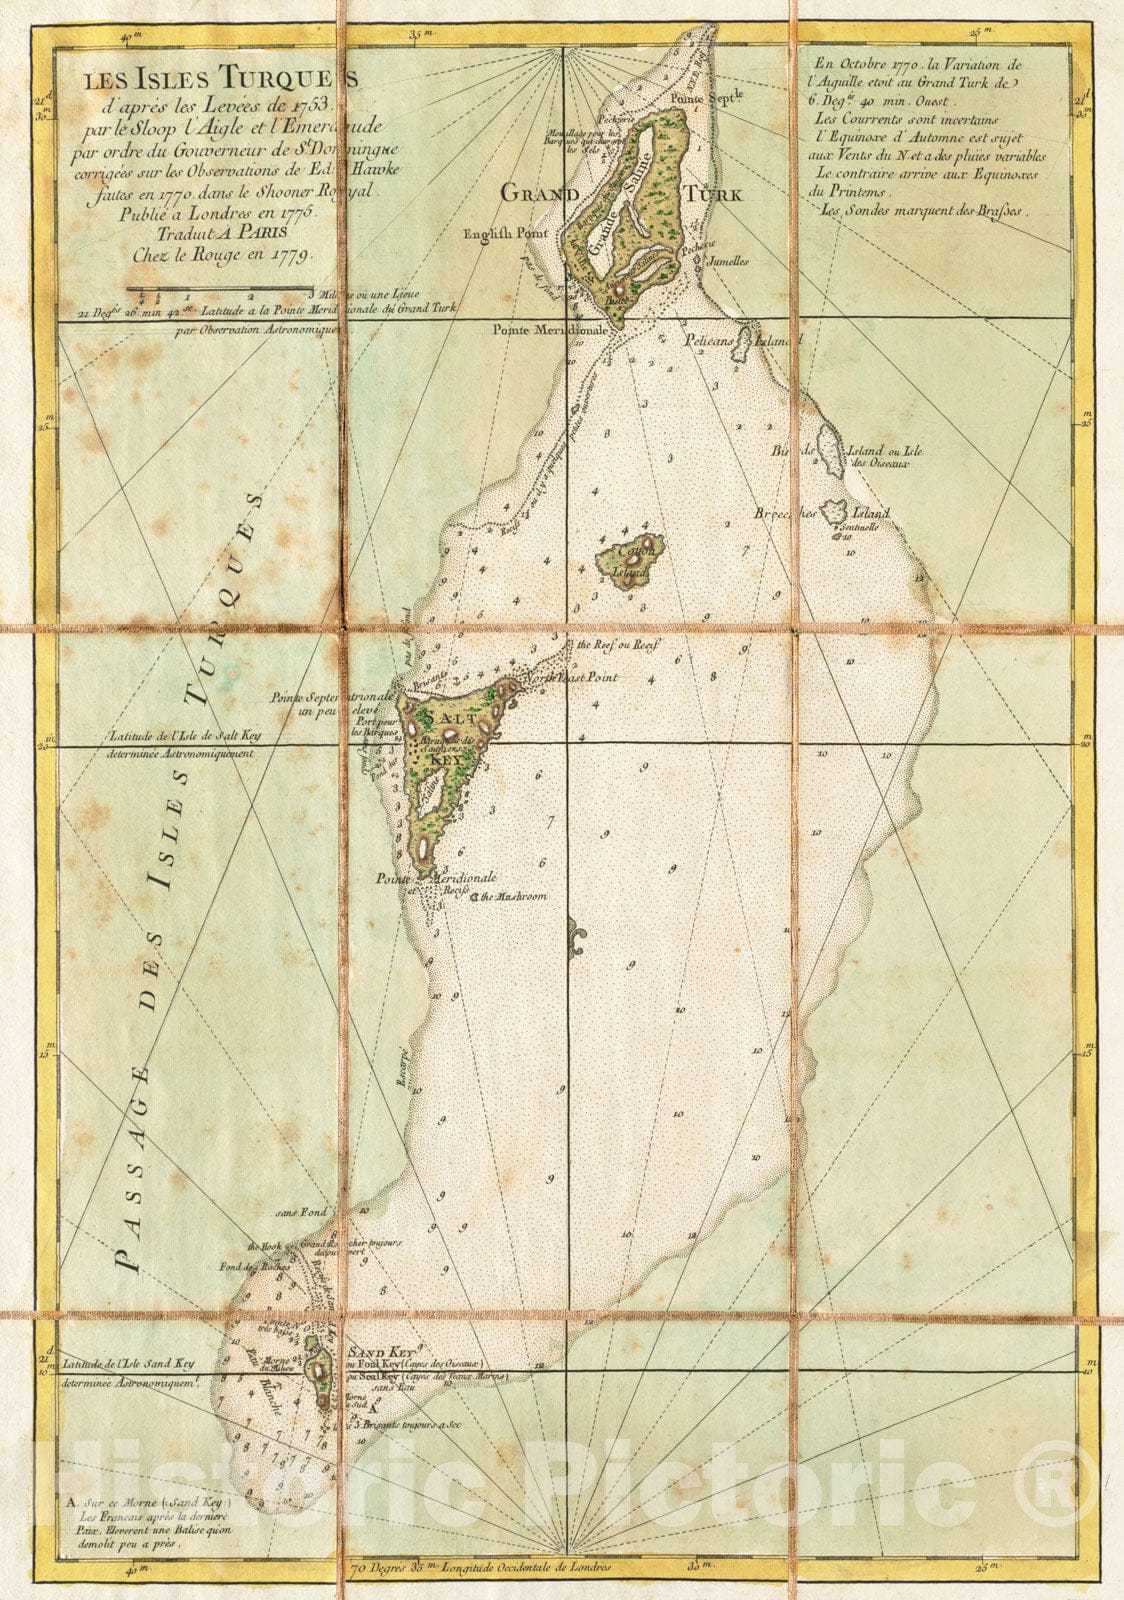 Historical Map, Les Isles Turques d'apreI's les levees de 1753 par le sloop l'Aigle et l'Emeraude par ordre du Gouverneur de St. Domingue, Vintage Wall Art